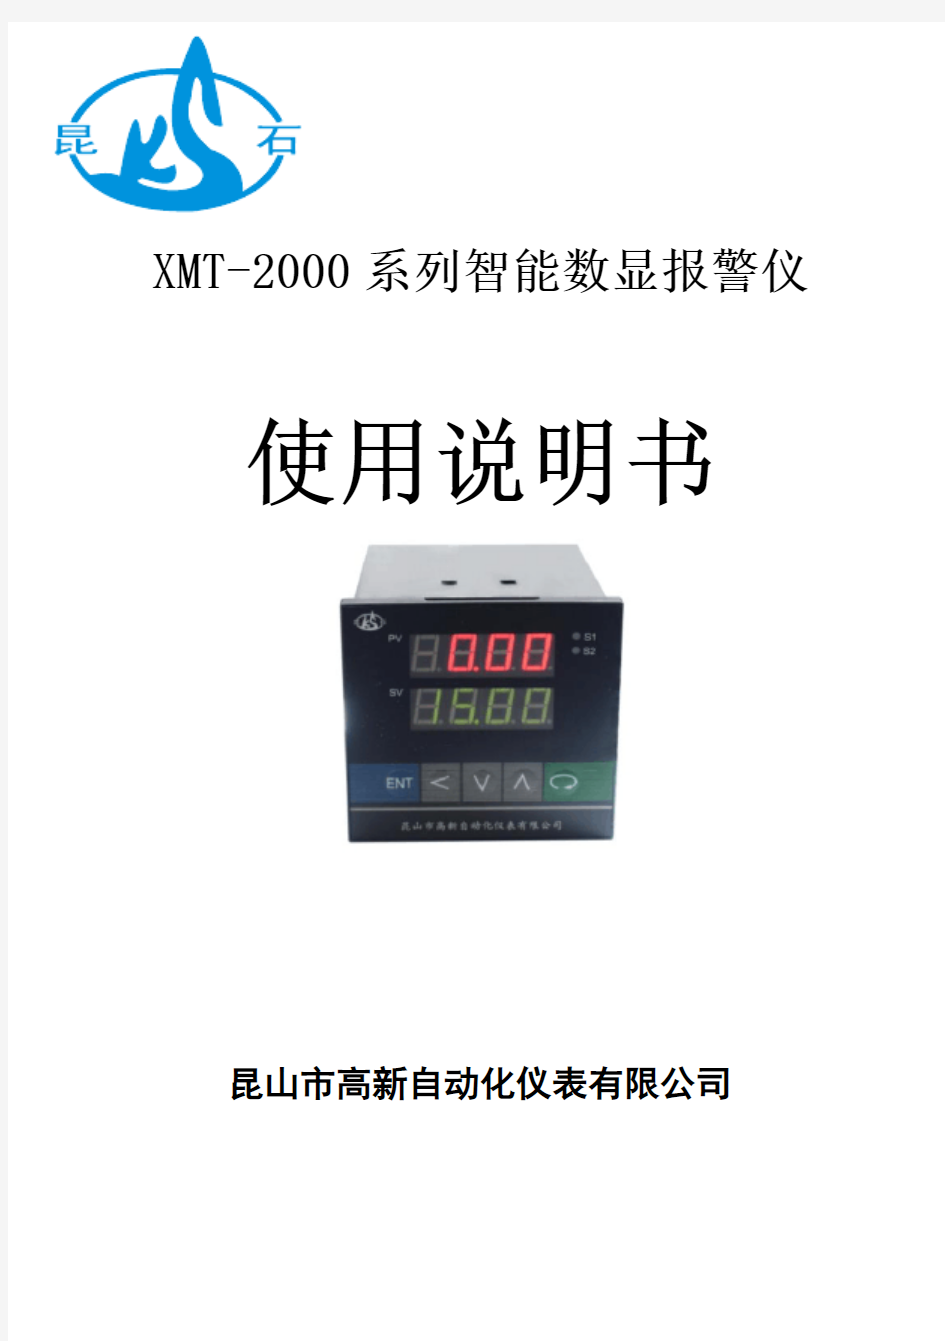 XMT-2000数显控制仪使用说明书